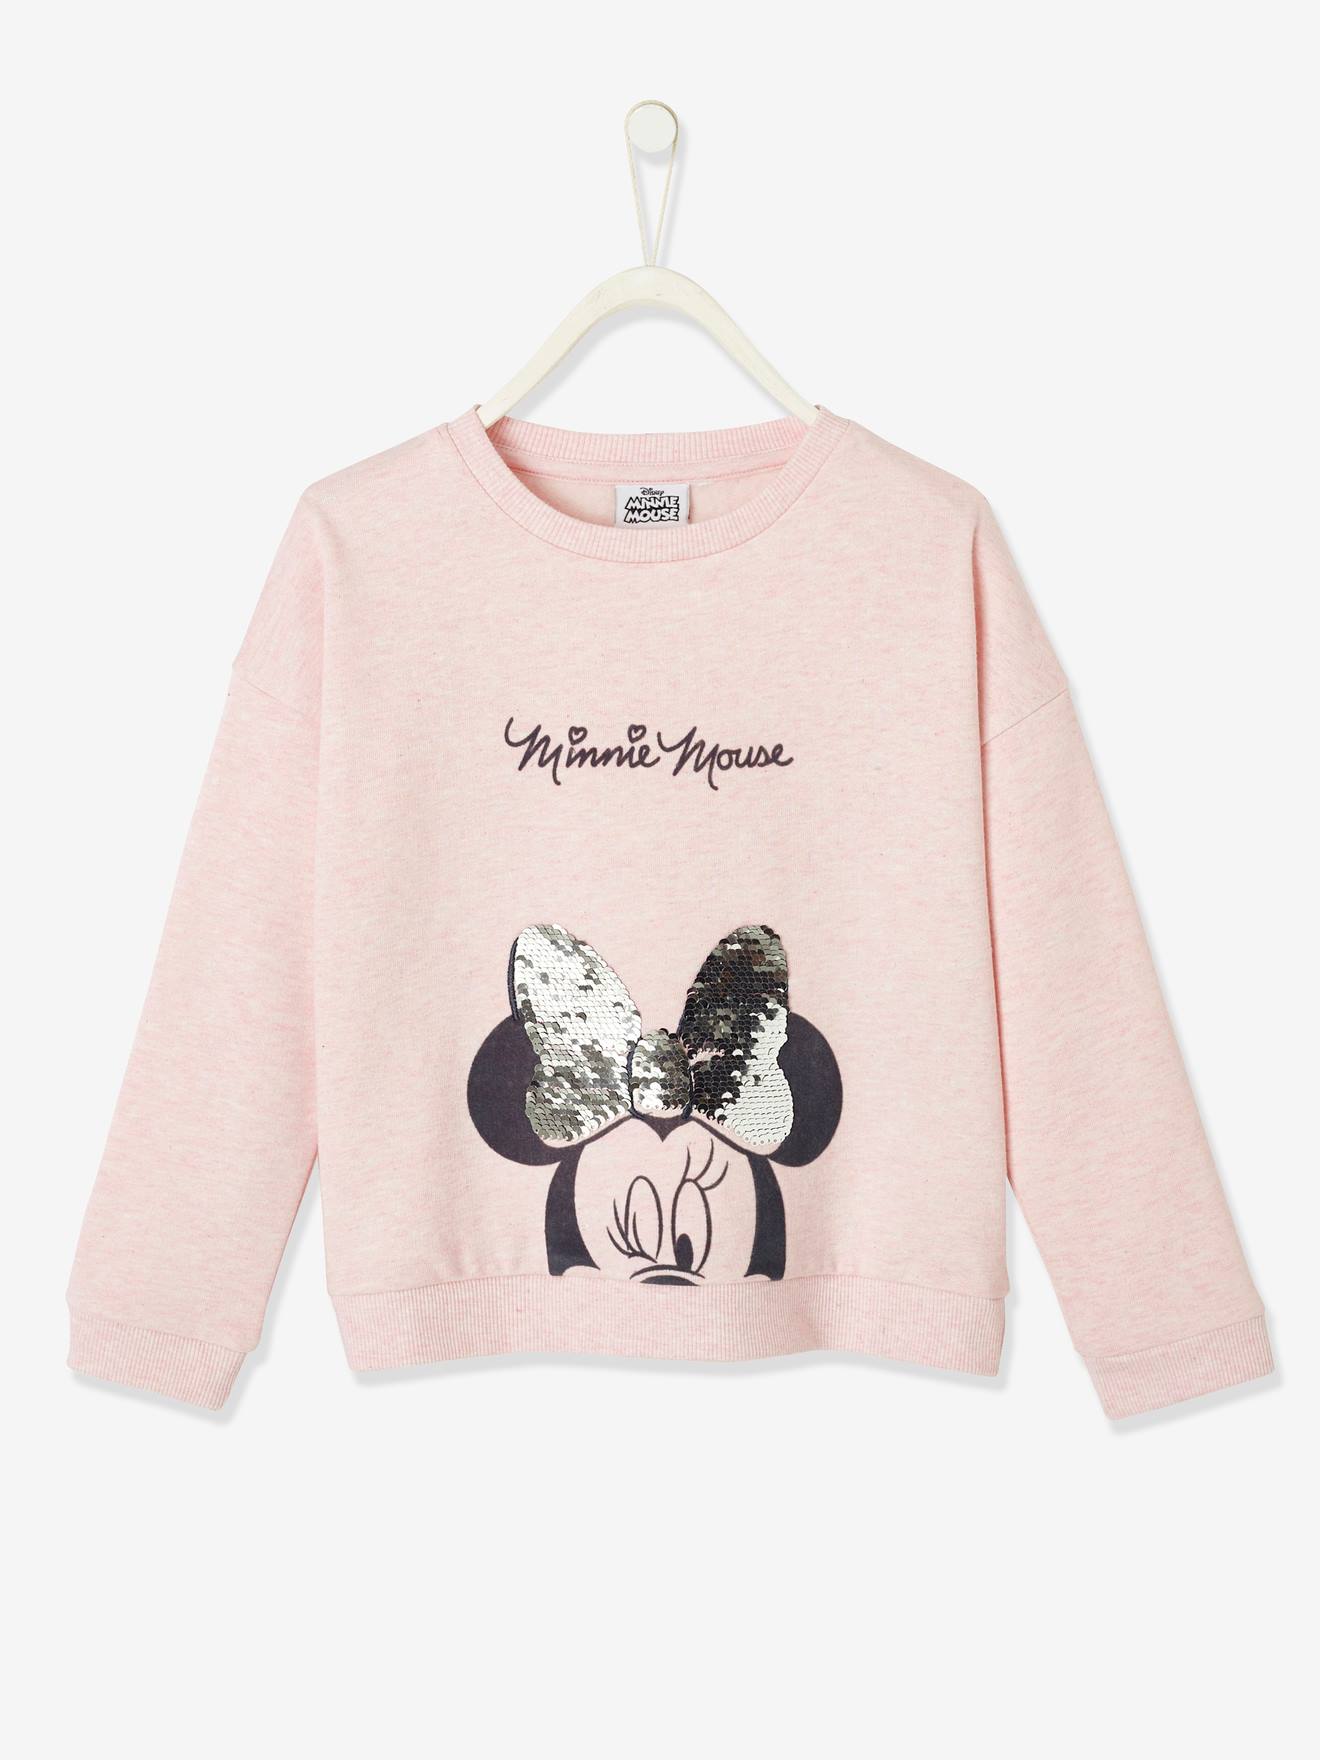 Minnie Mouse Niñas Lentejuelas Reversible de raya Camiseta Mangas Largas 2-8 años